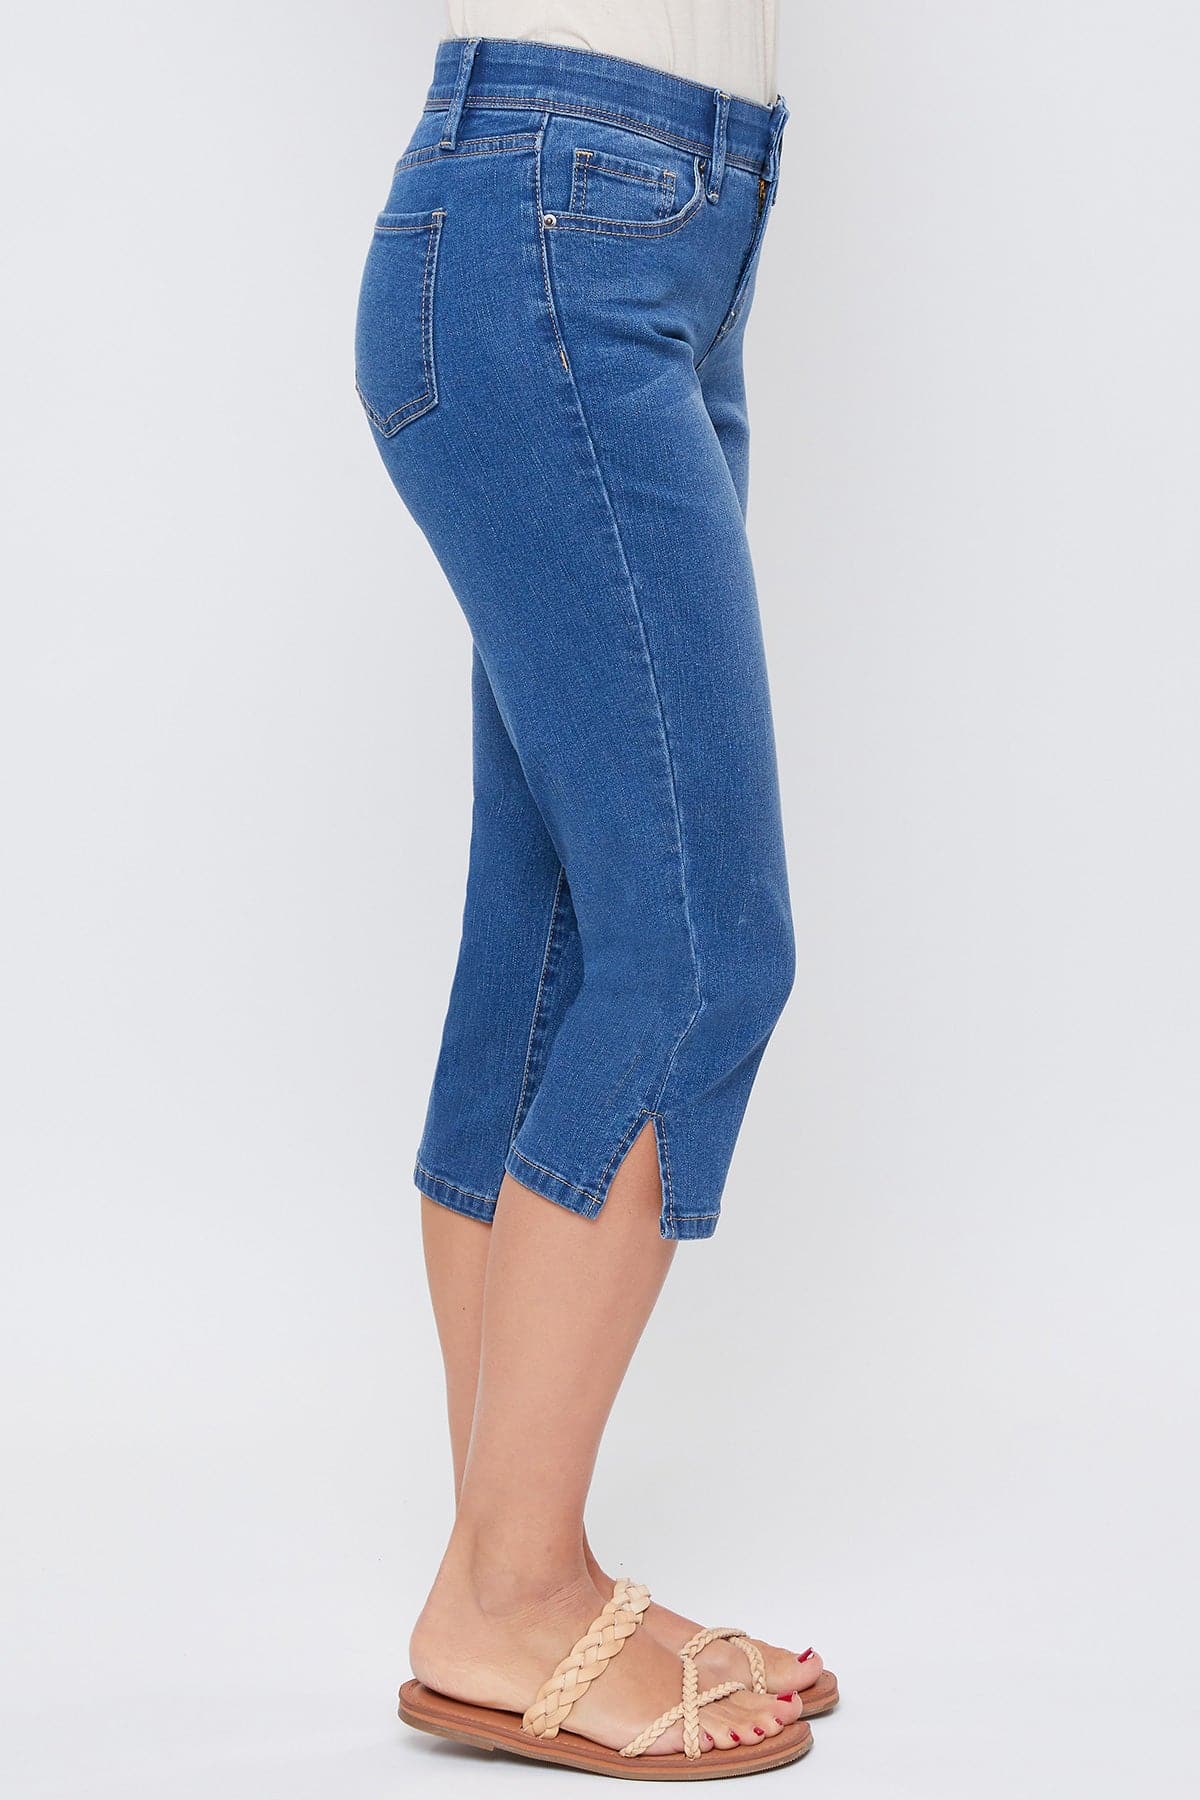 Women's Side Slit Hem Capri Jeans